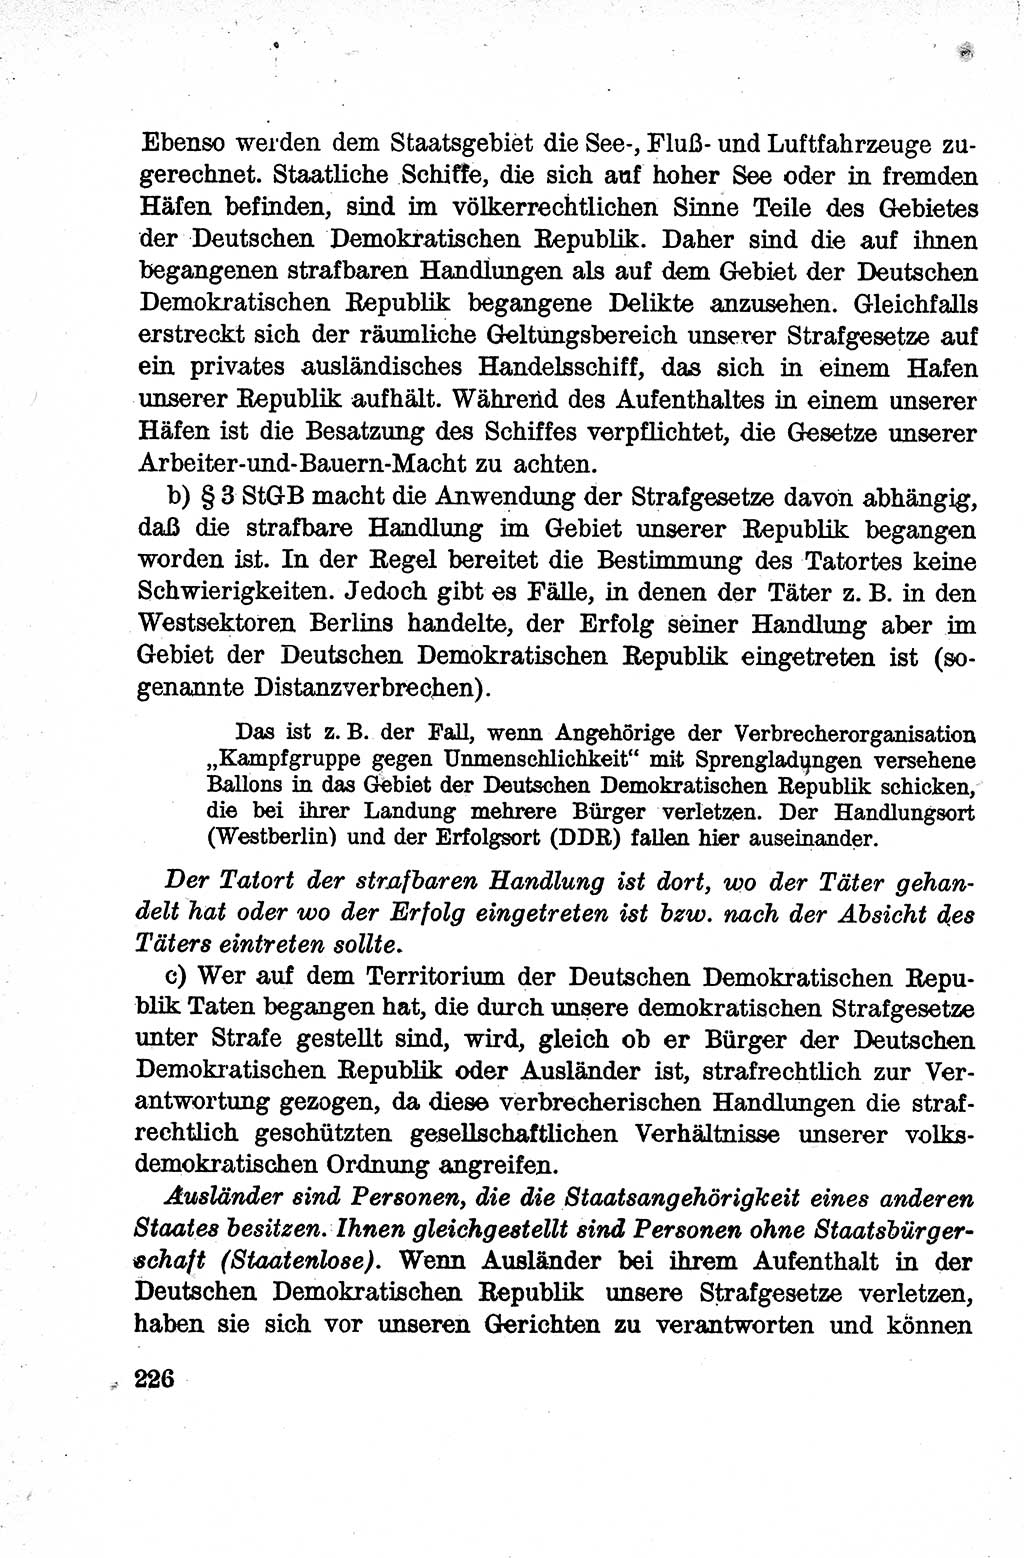 Lehrbuch des Strafrechts der Deutschen Demokratischen Republik (DDR), Allgemeiner Teil 1959, Seite 226 (Lb. Strafr. DDR AT 1959, S. 226)